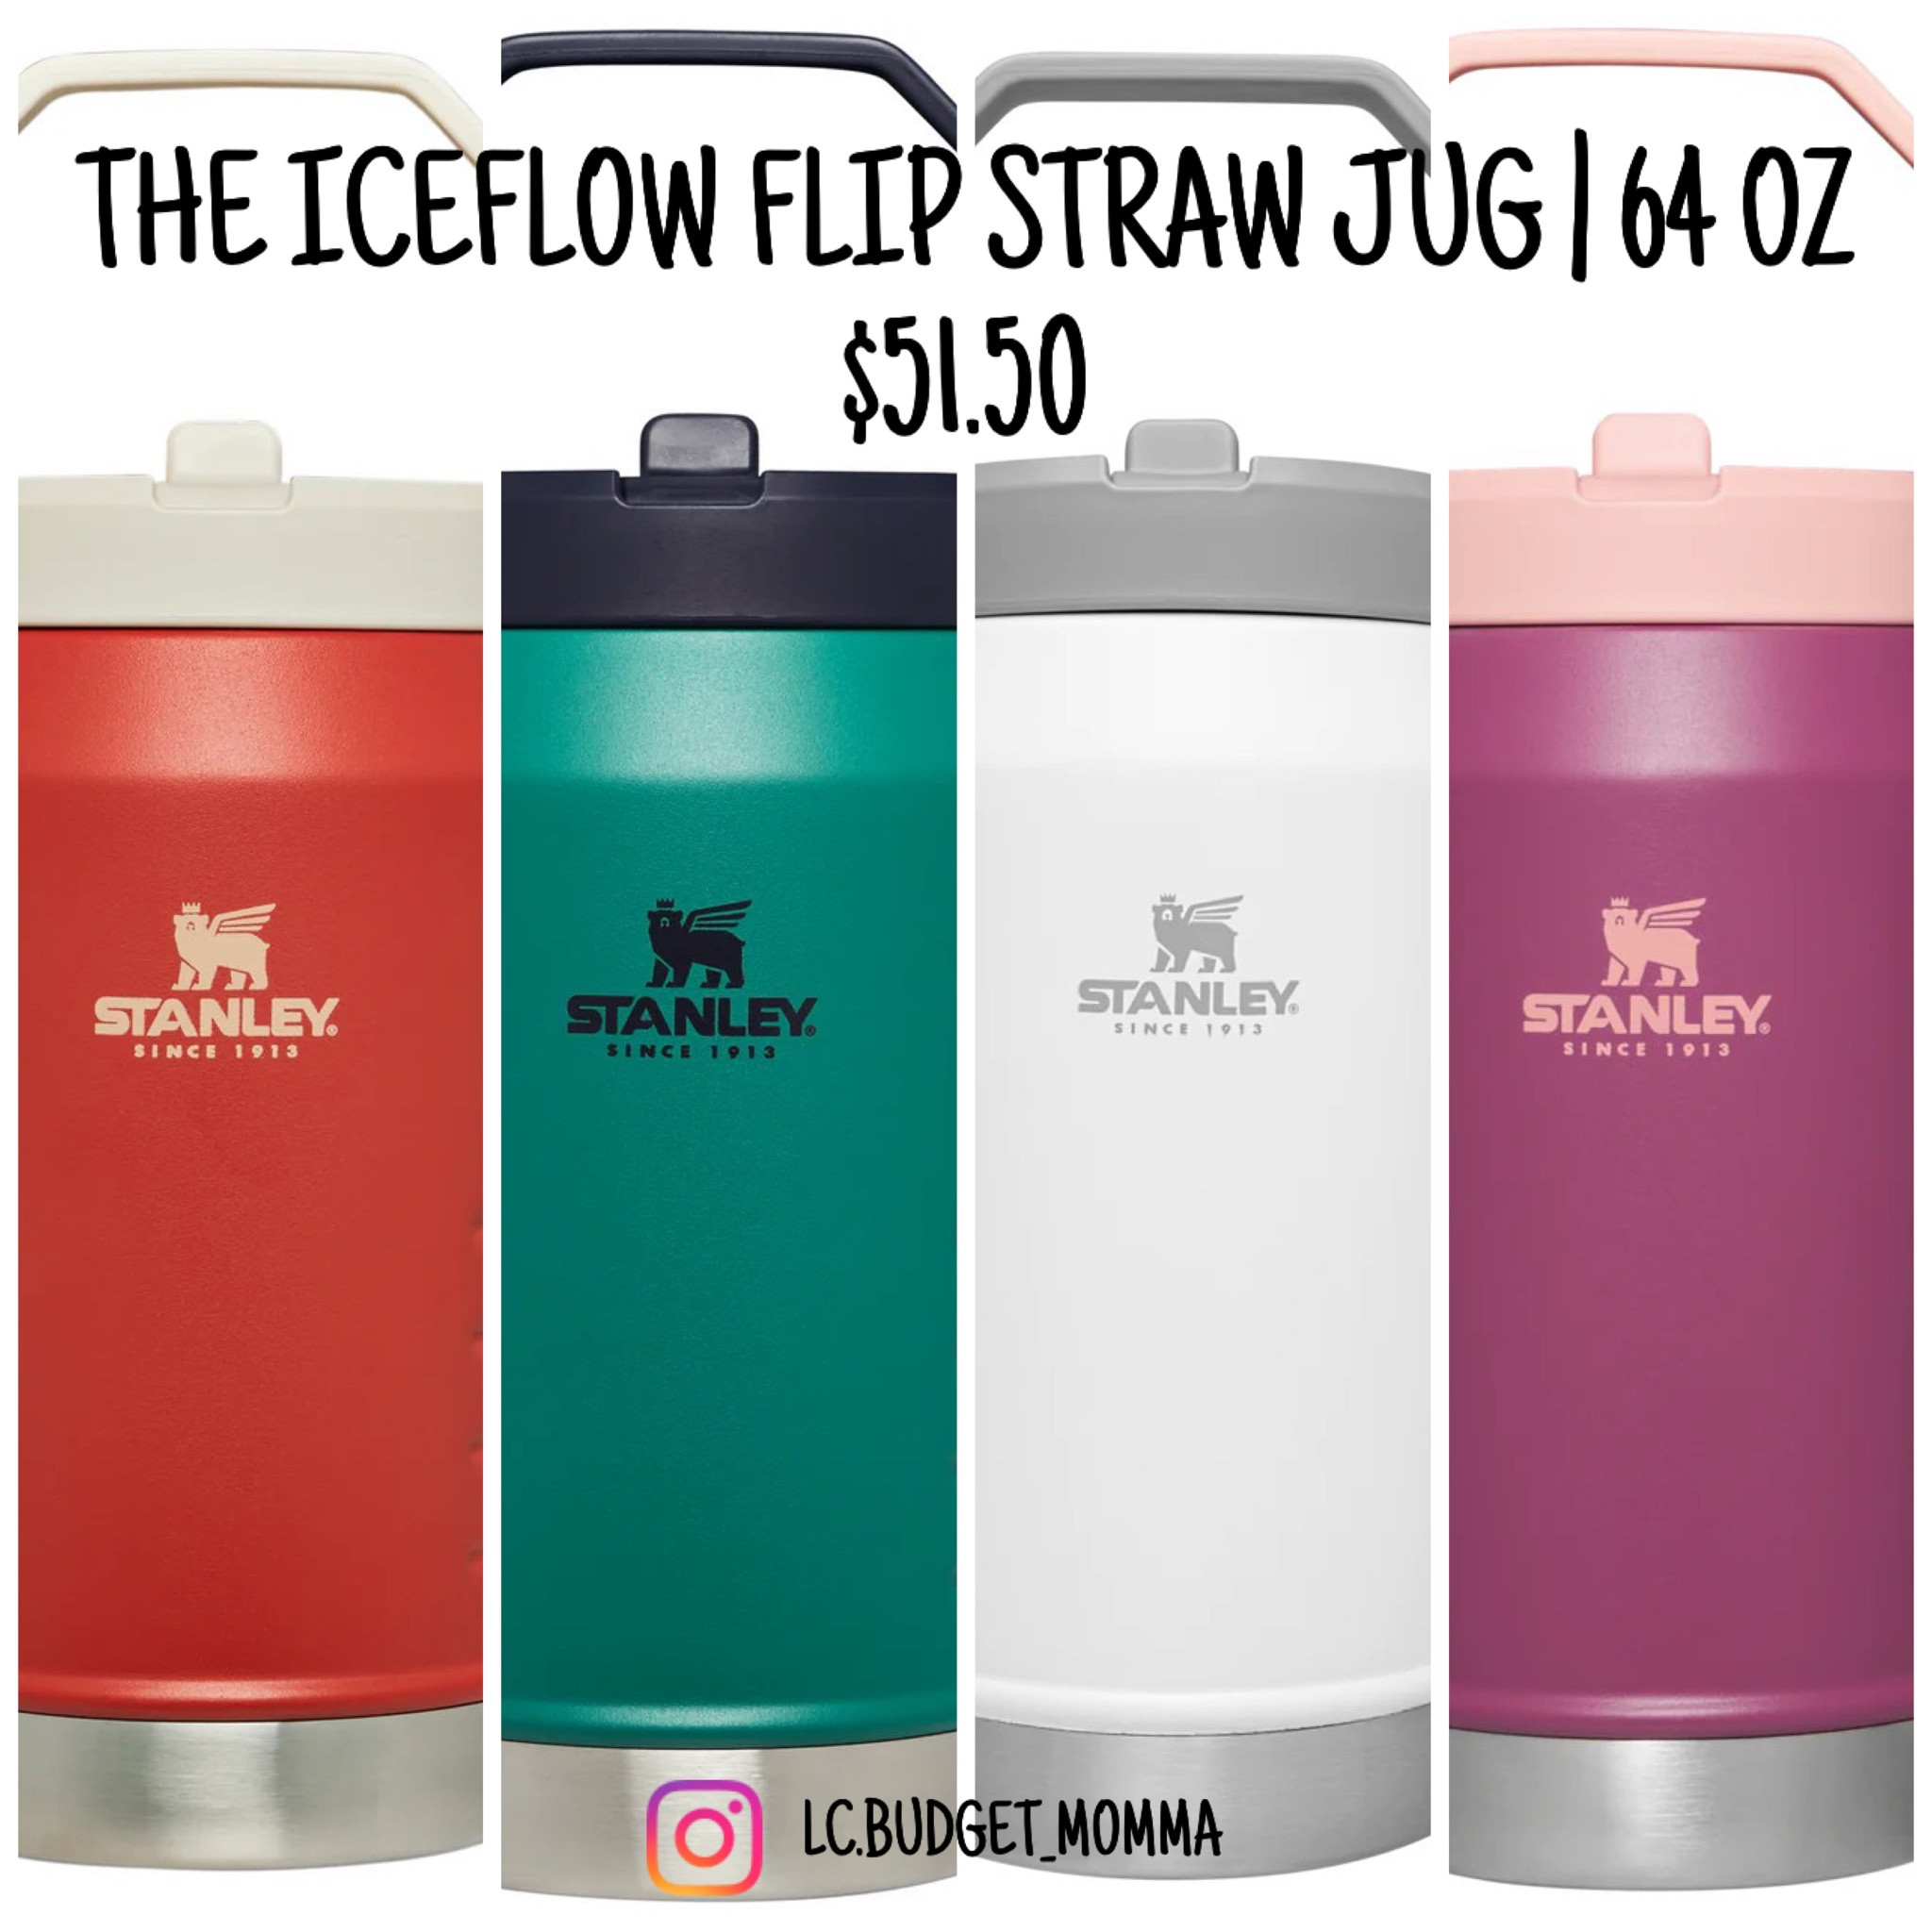 Stanley The IceFlow 64 oz. Flip Straw Jug